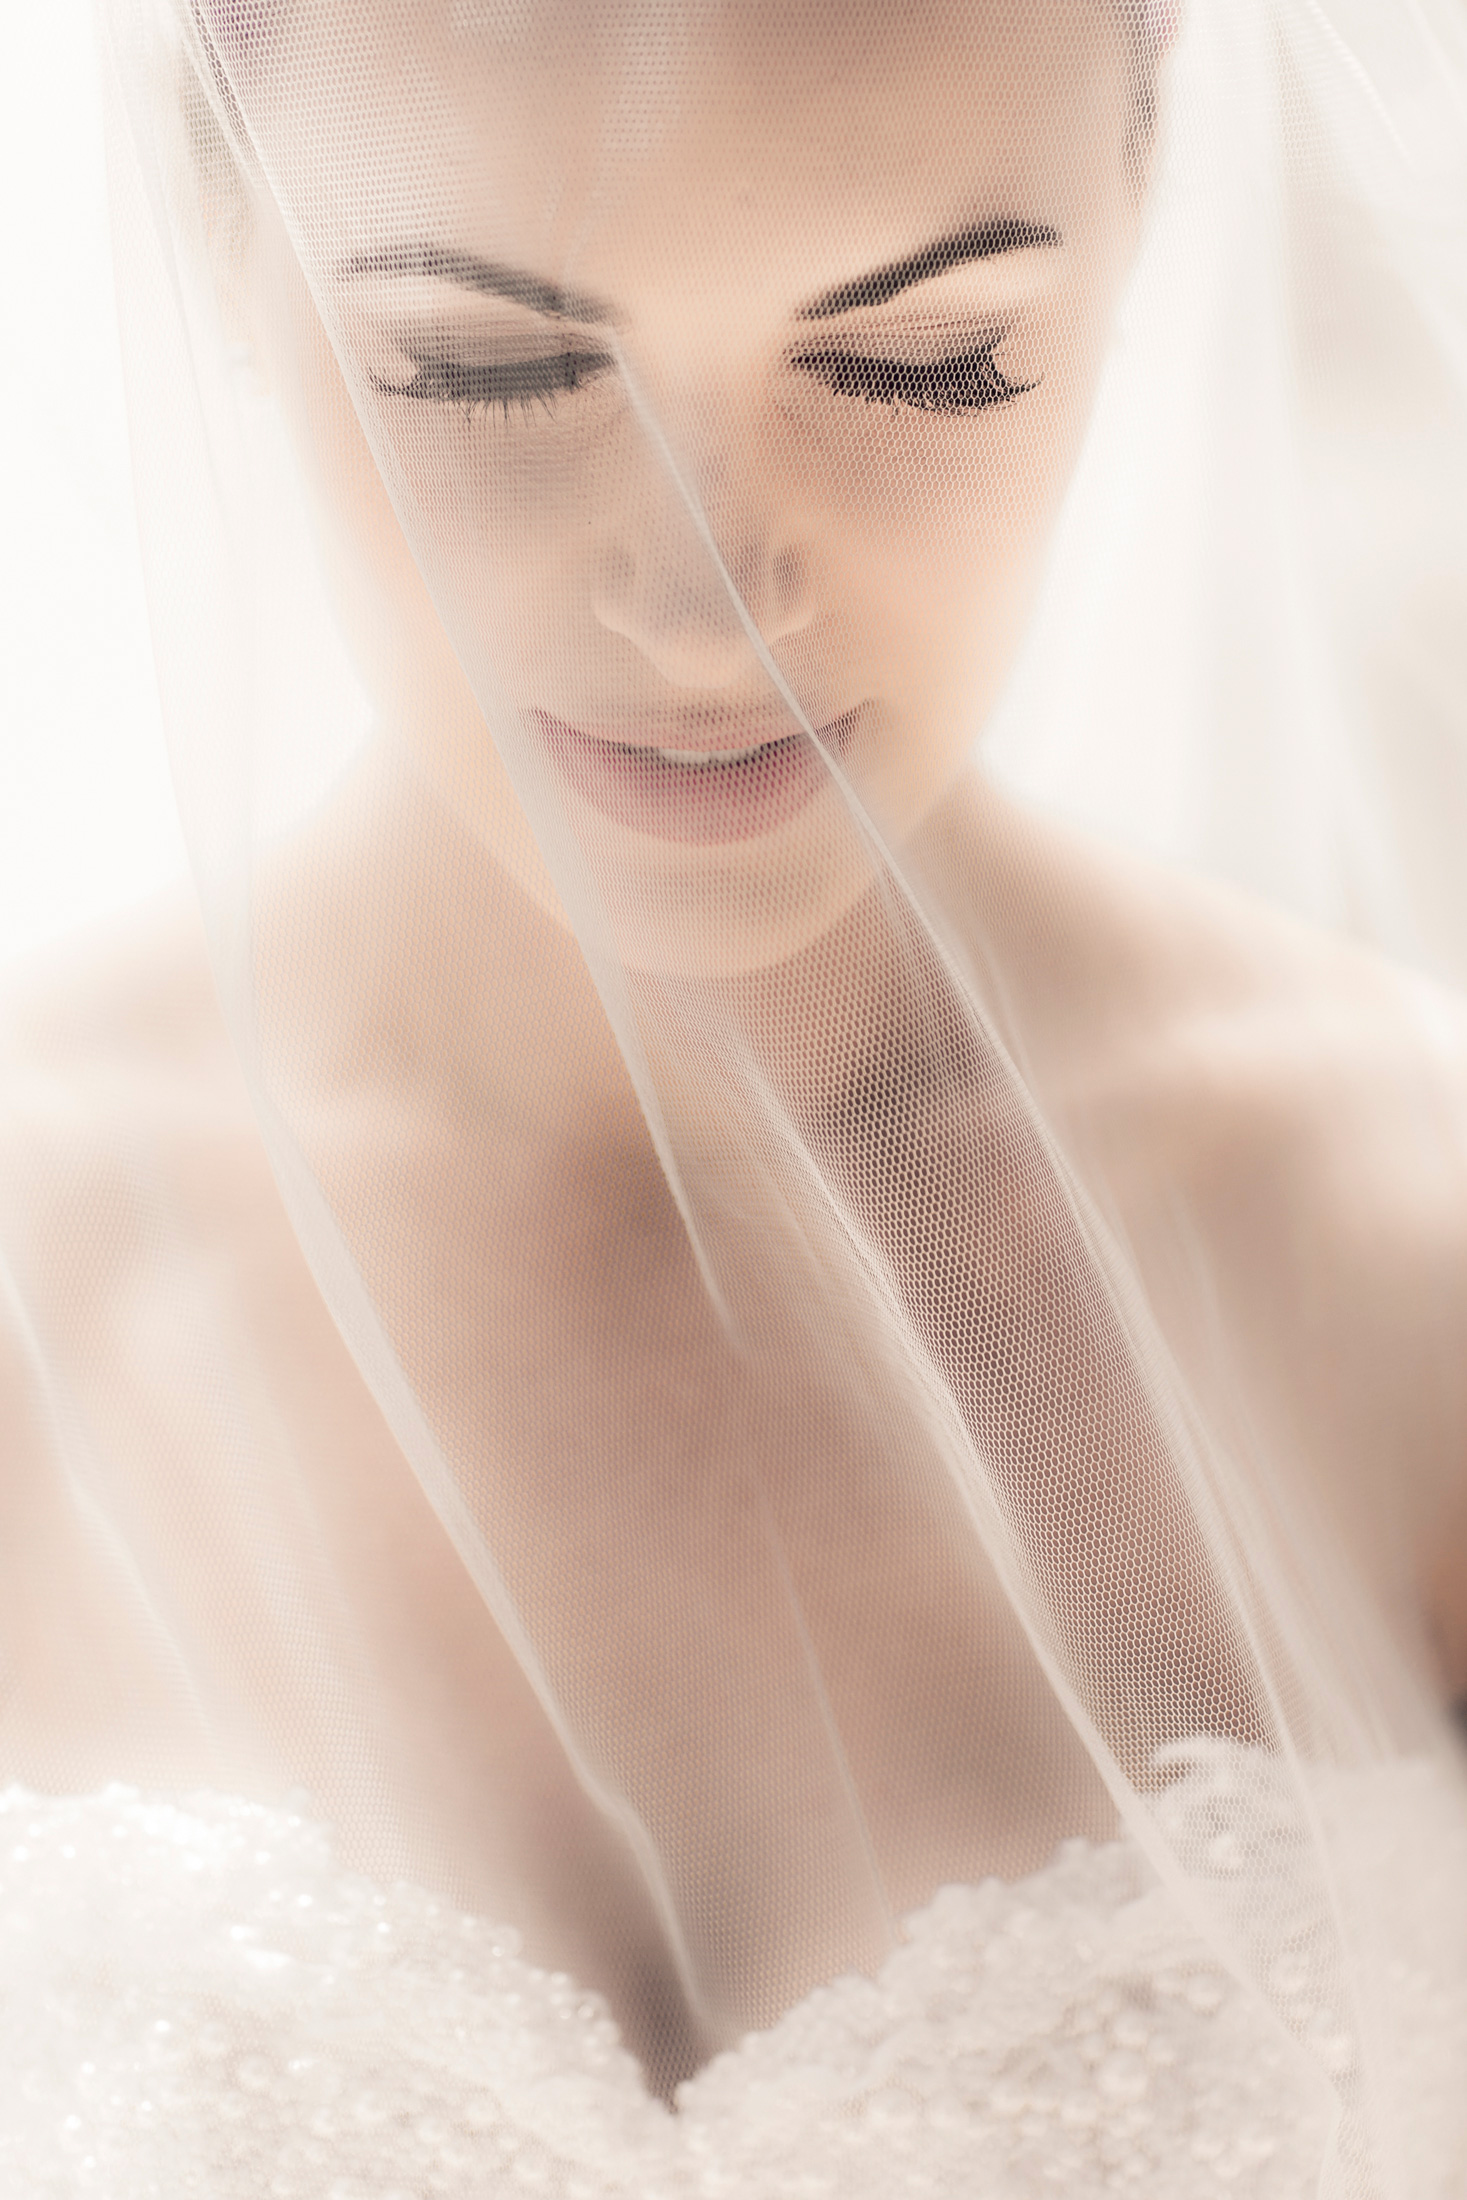 Lauren_Jacob_Elegant-Wedding_011